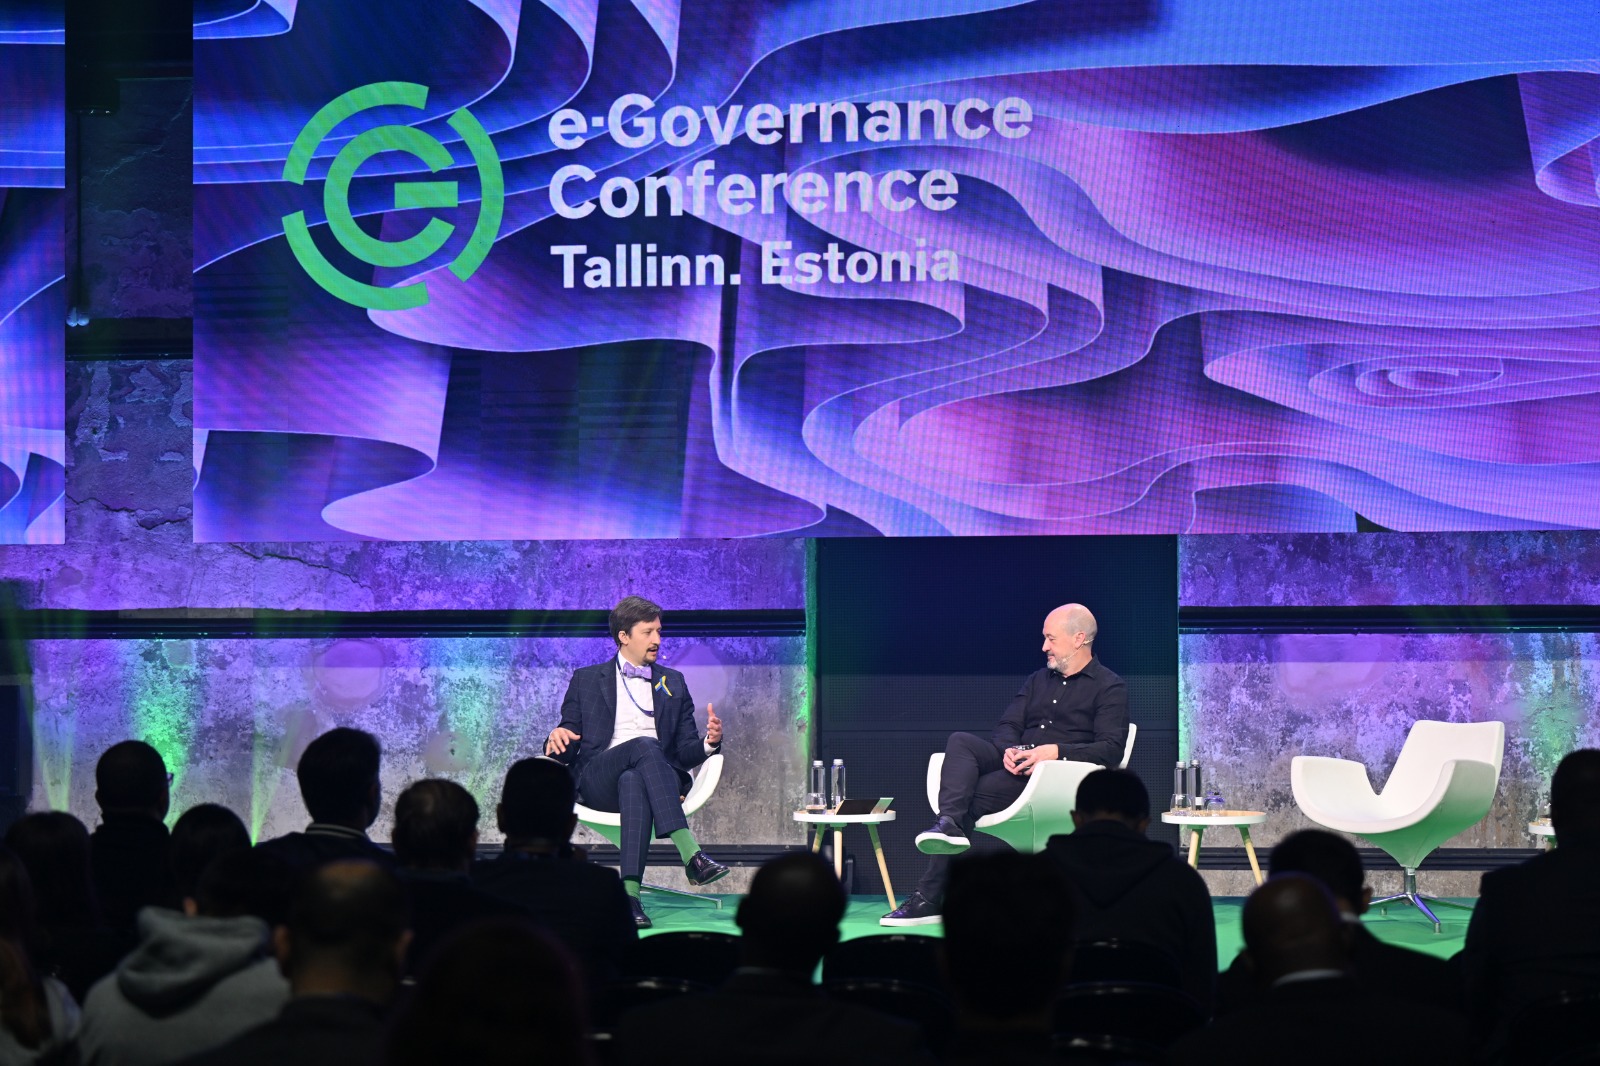 Etice participará do E-Governance Conference 2023, maior evento de Governo Digital do mundo, na Estônia.